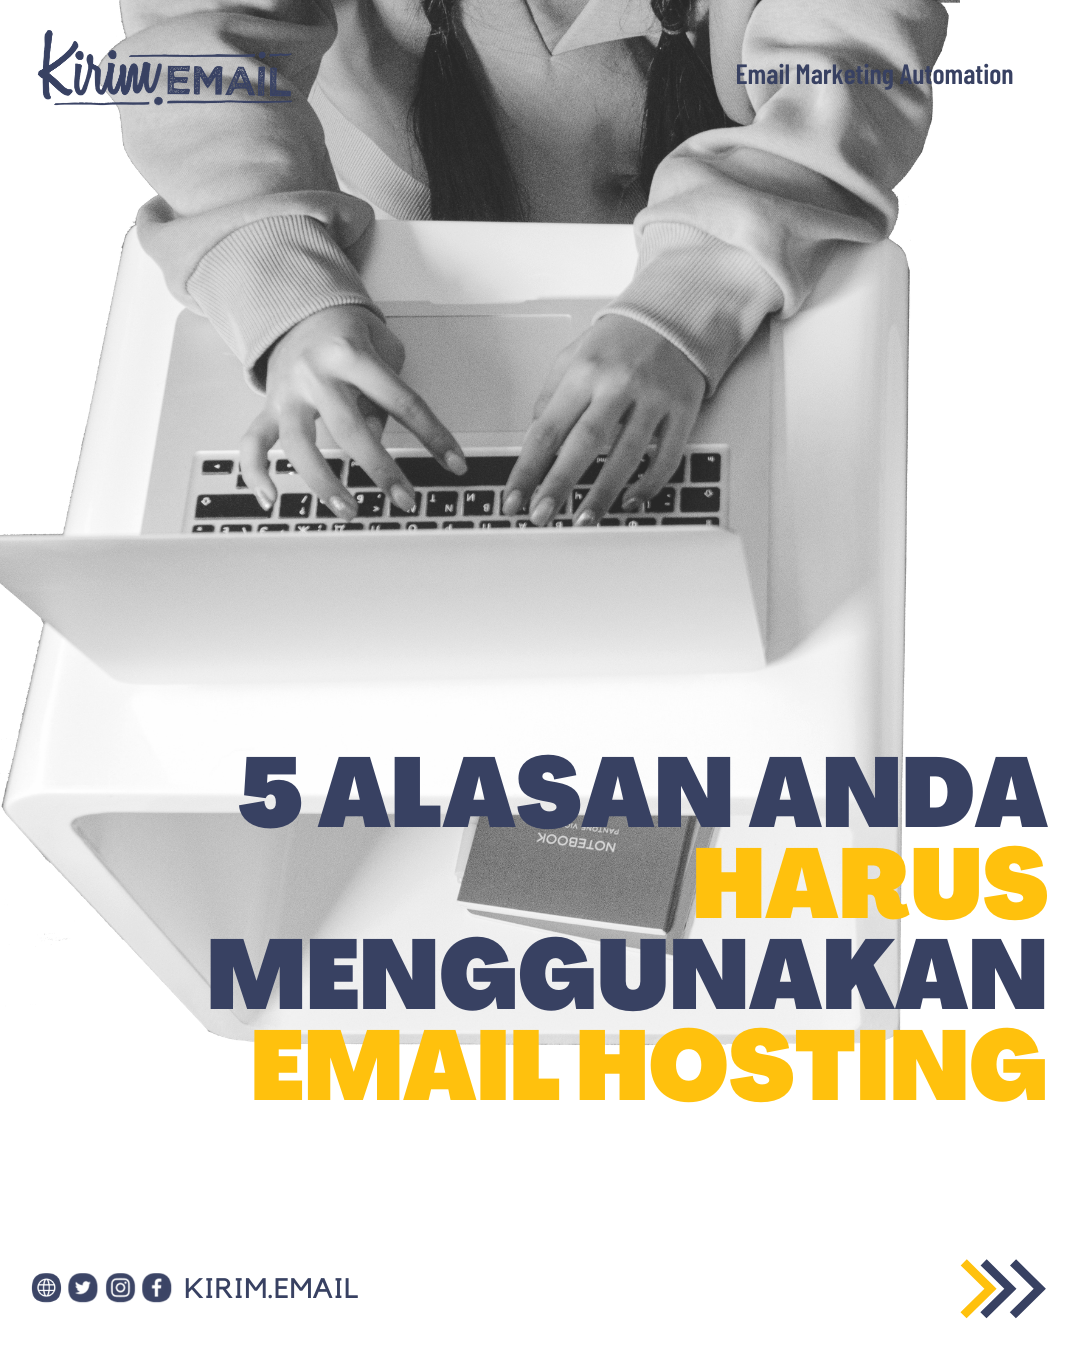 5 Alasan Anda Harus Menggunakan Email Hosting